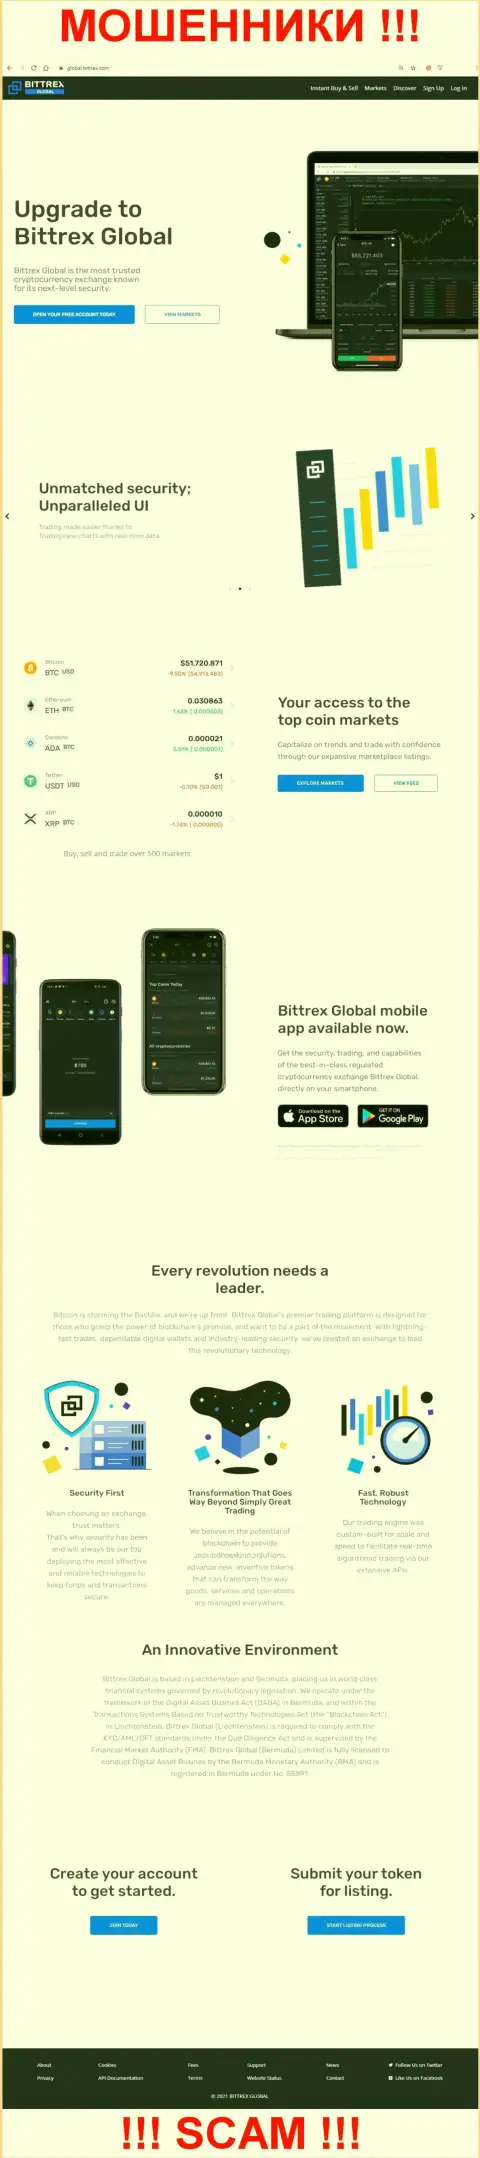 Сайт мошенников Bittrex